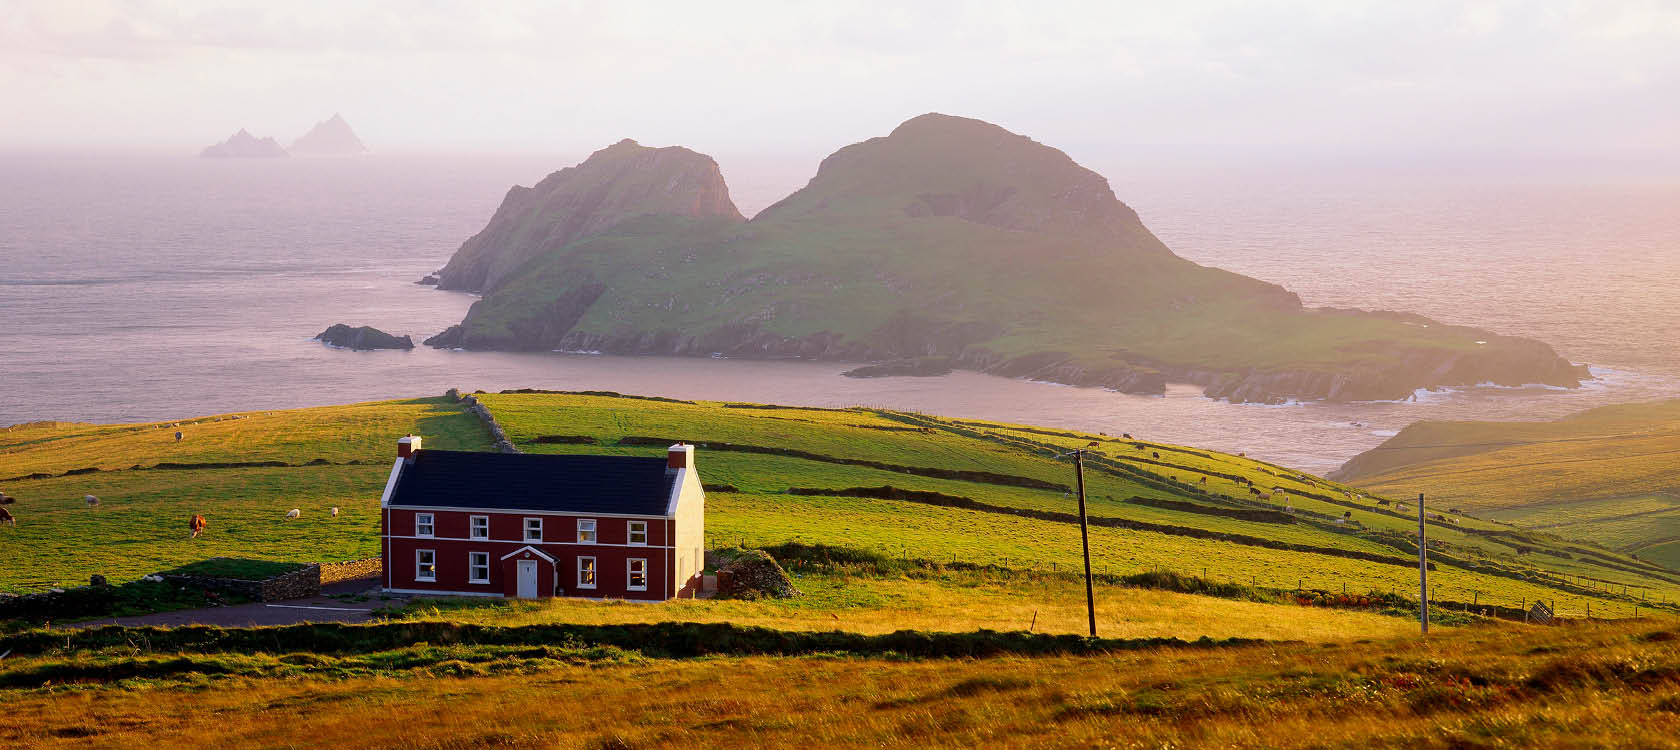 Det natursköna Ring of Kerry med hus, åker och berg i havet, rundresa på Irland.